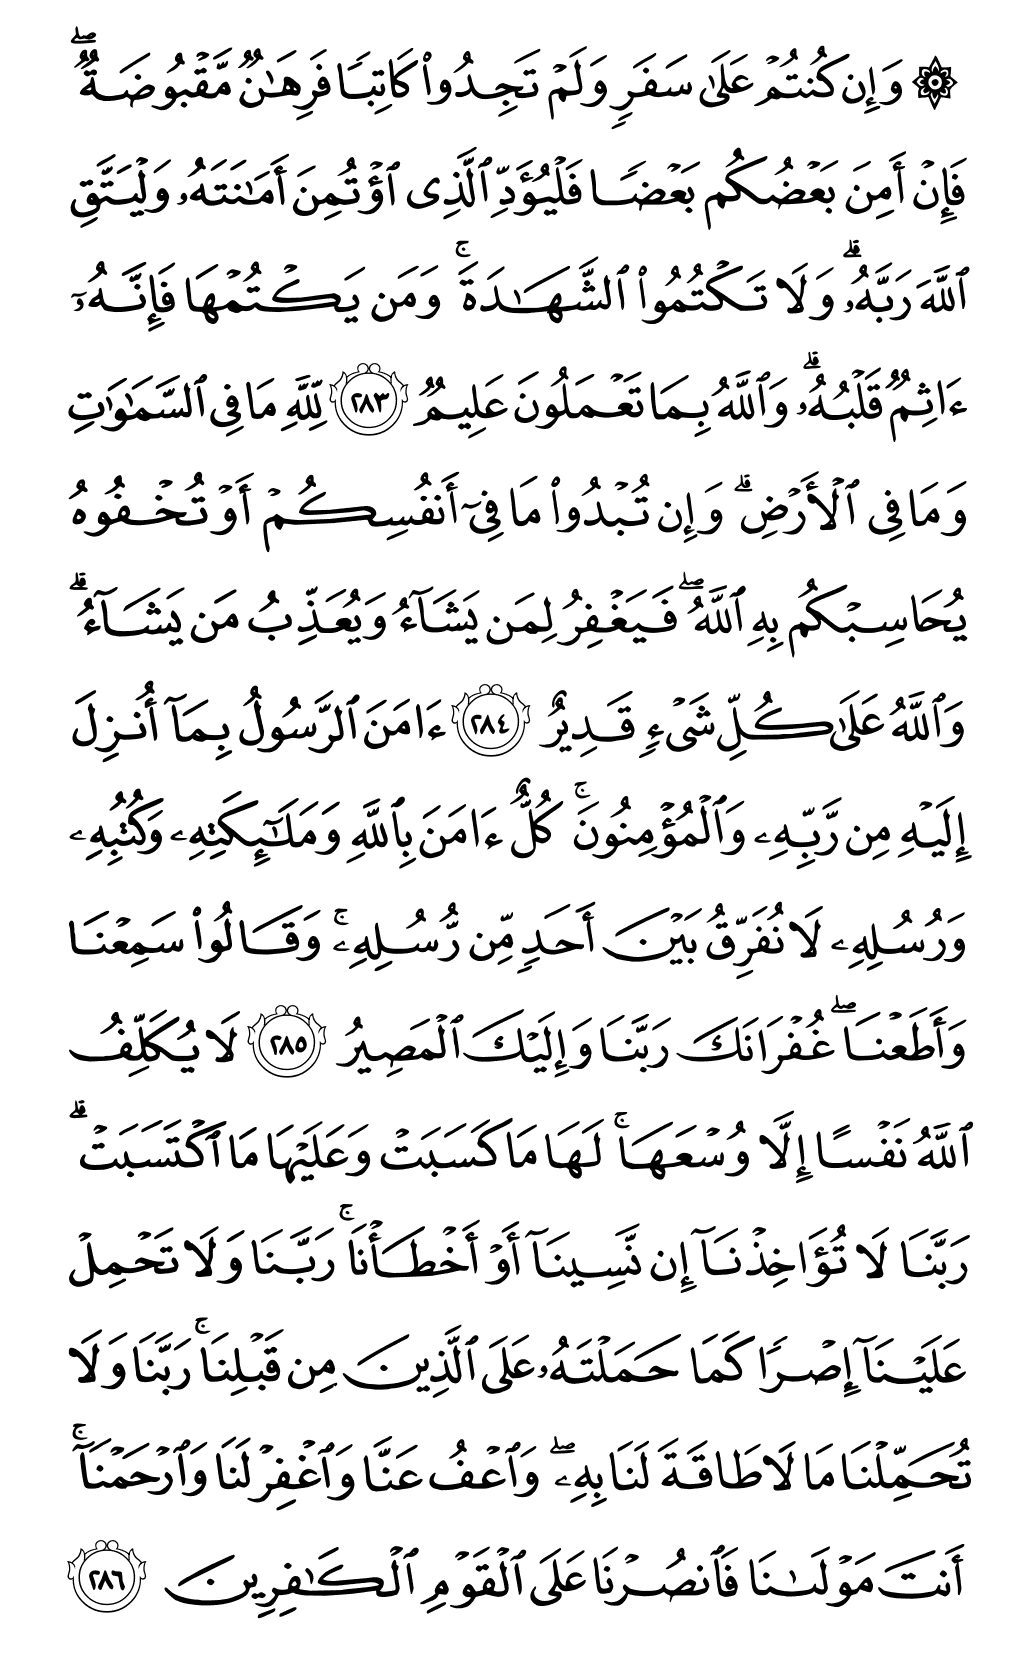 الصفحة رقم 49 من القرآن الكريم